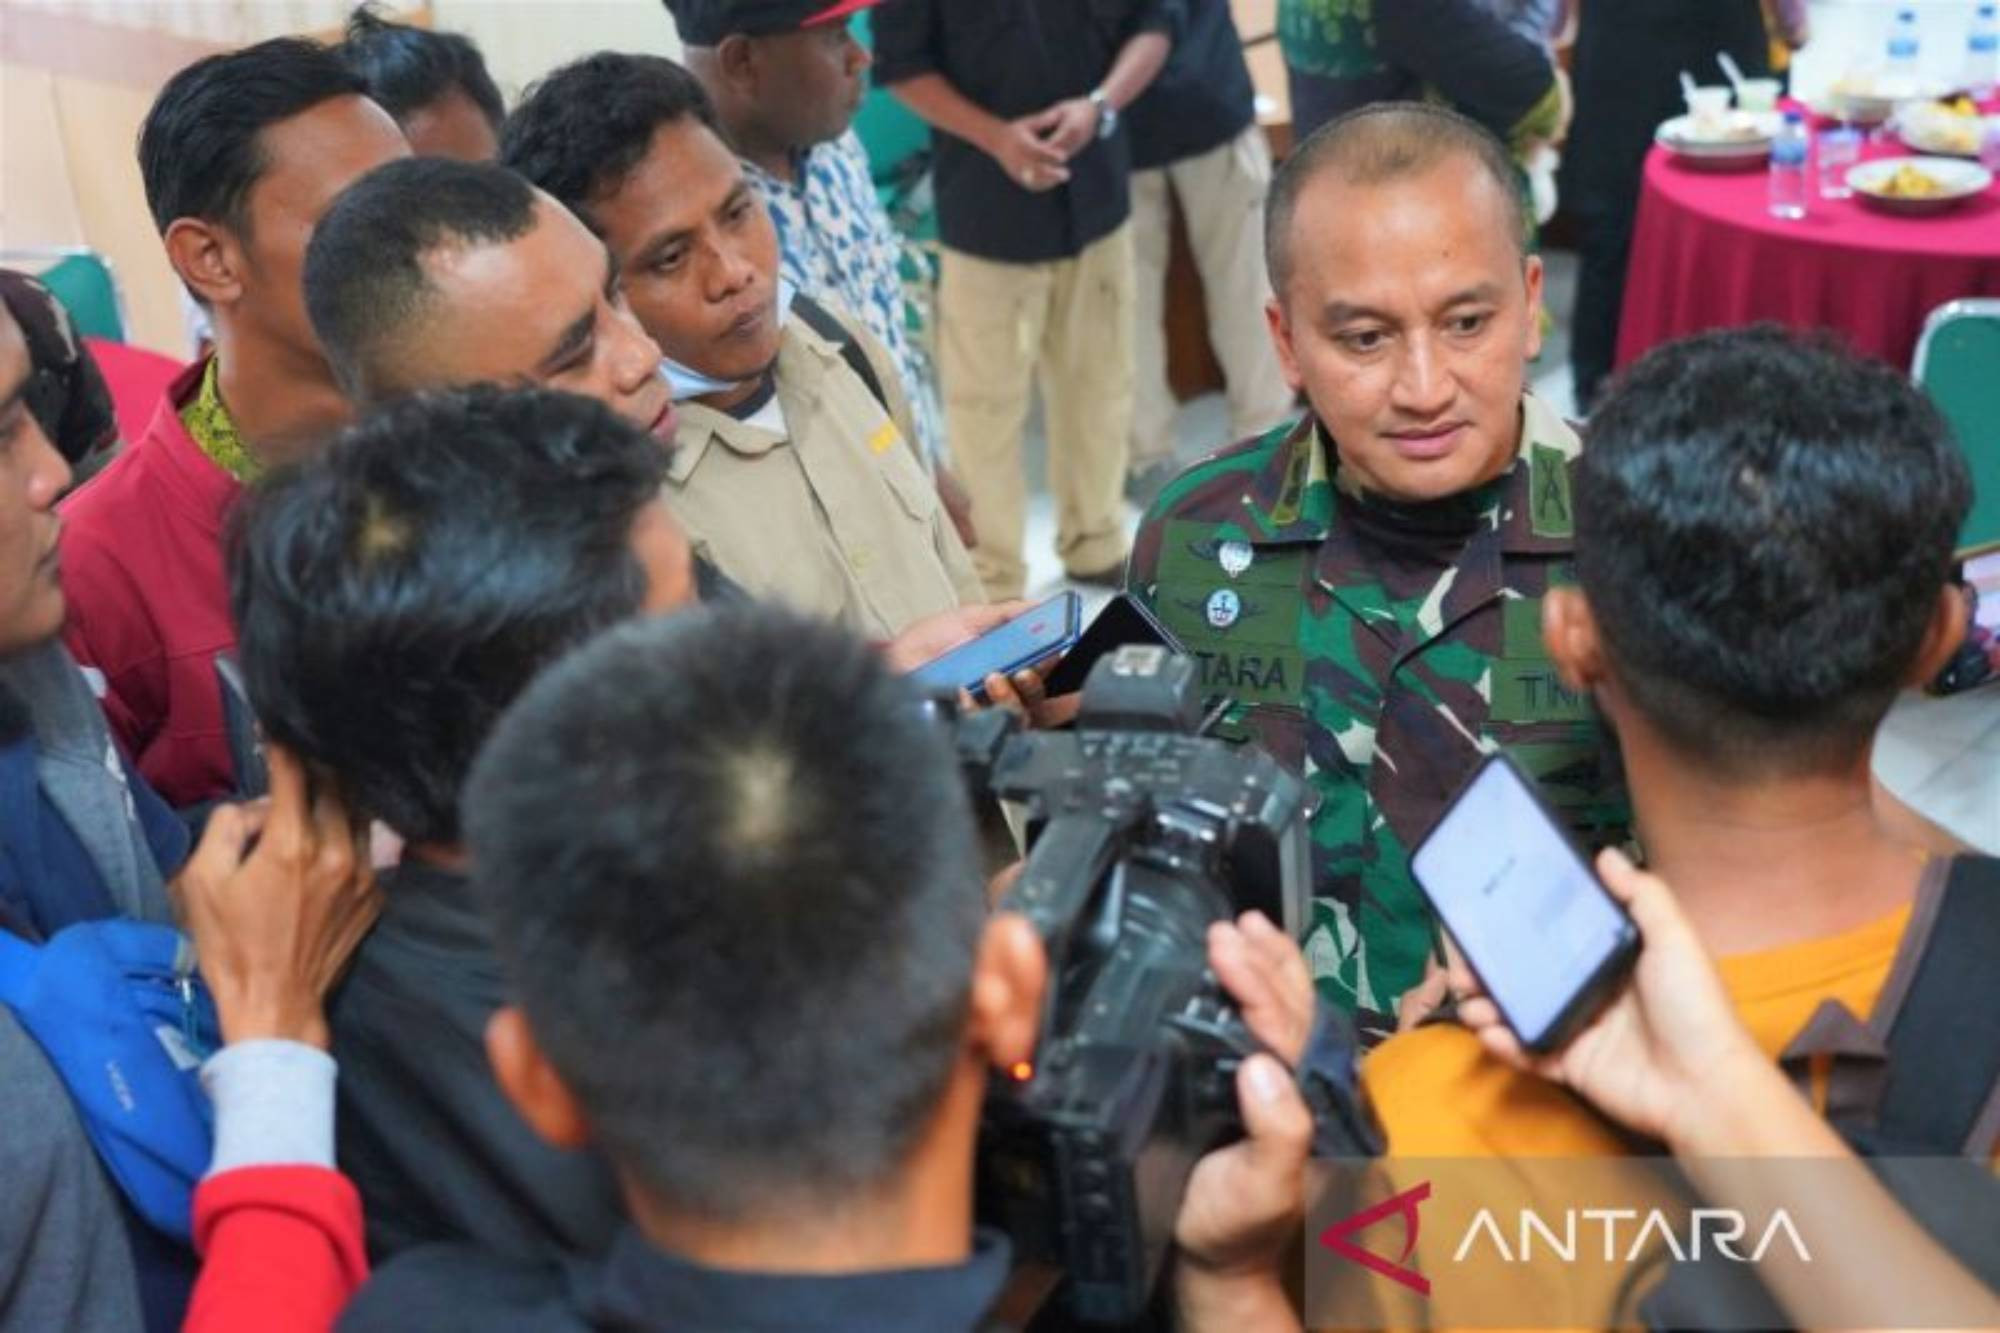 KSTB Tembak Mati 4 Warga, Kolonel Batara Alex Bulo: Brutal, Wajib Kita Basmi - JPNN.com